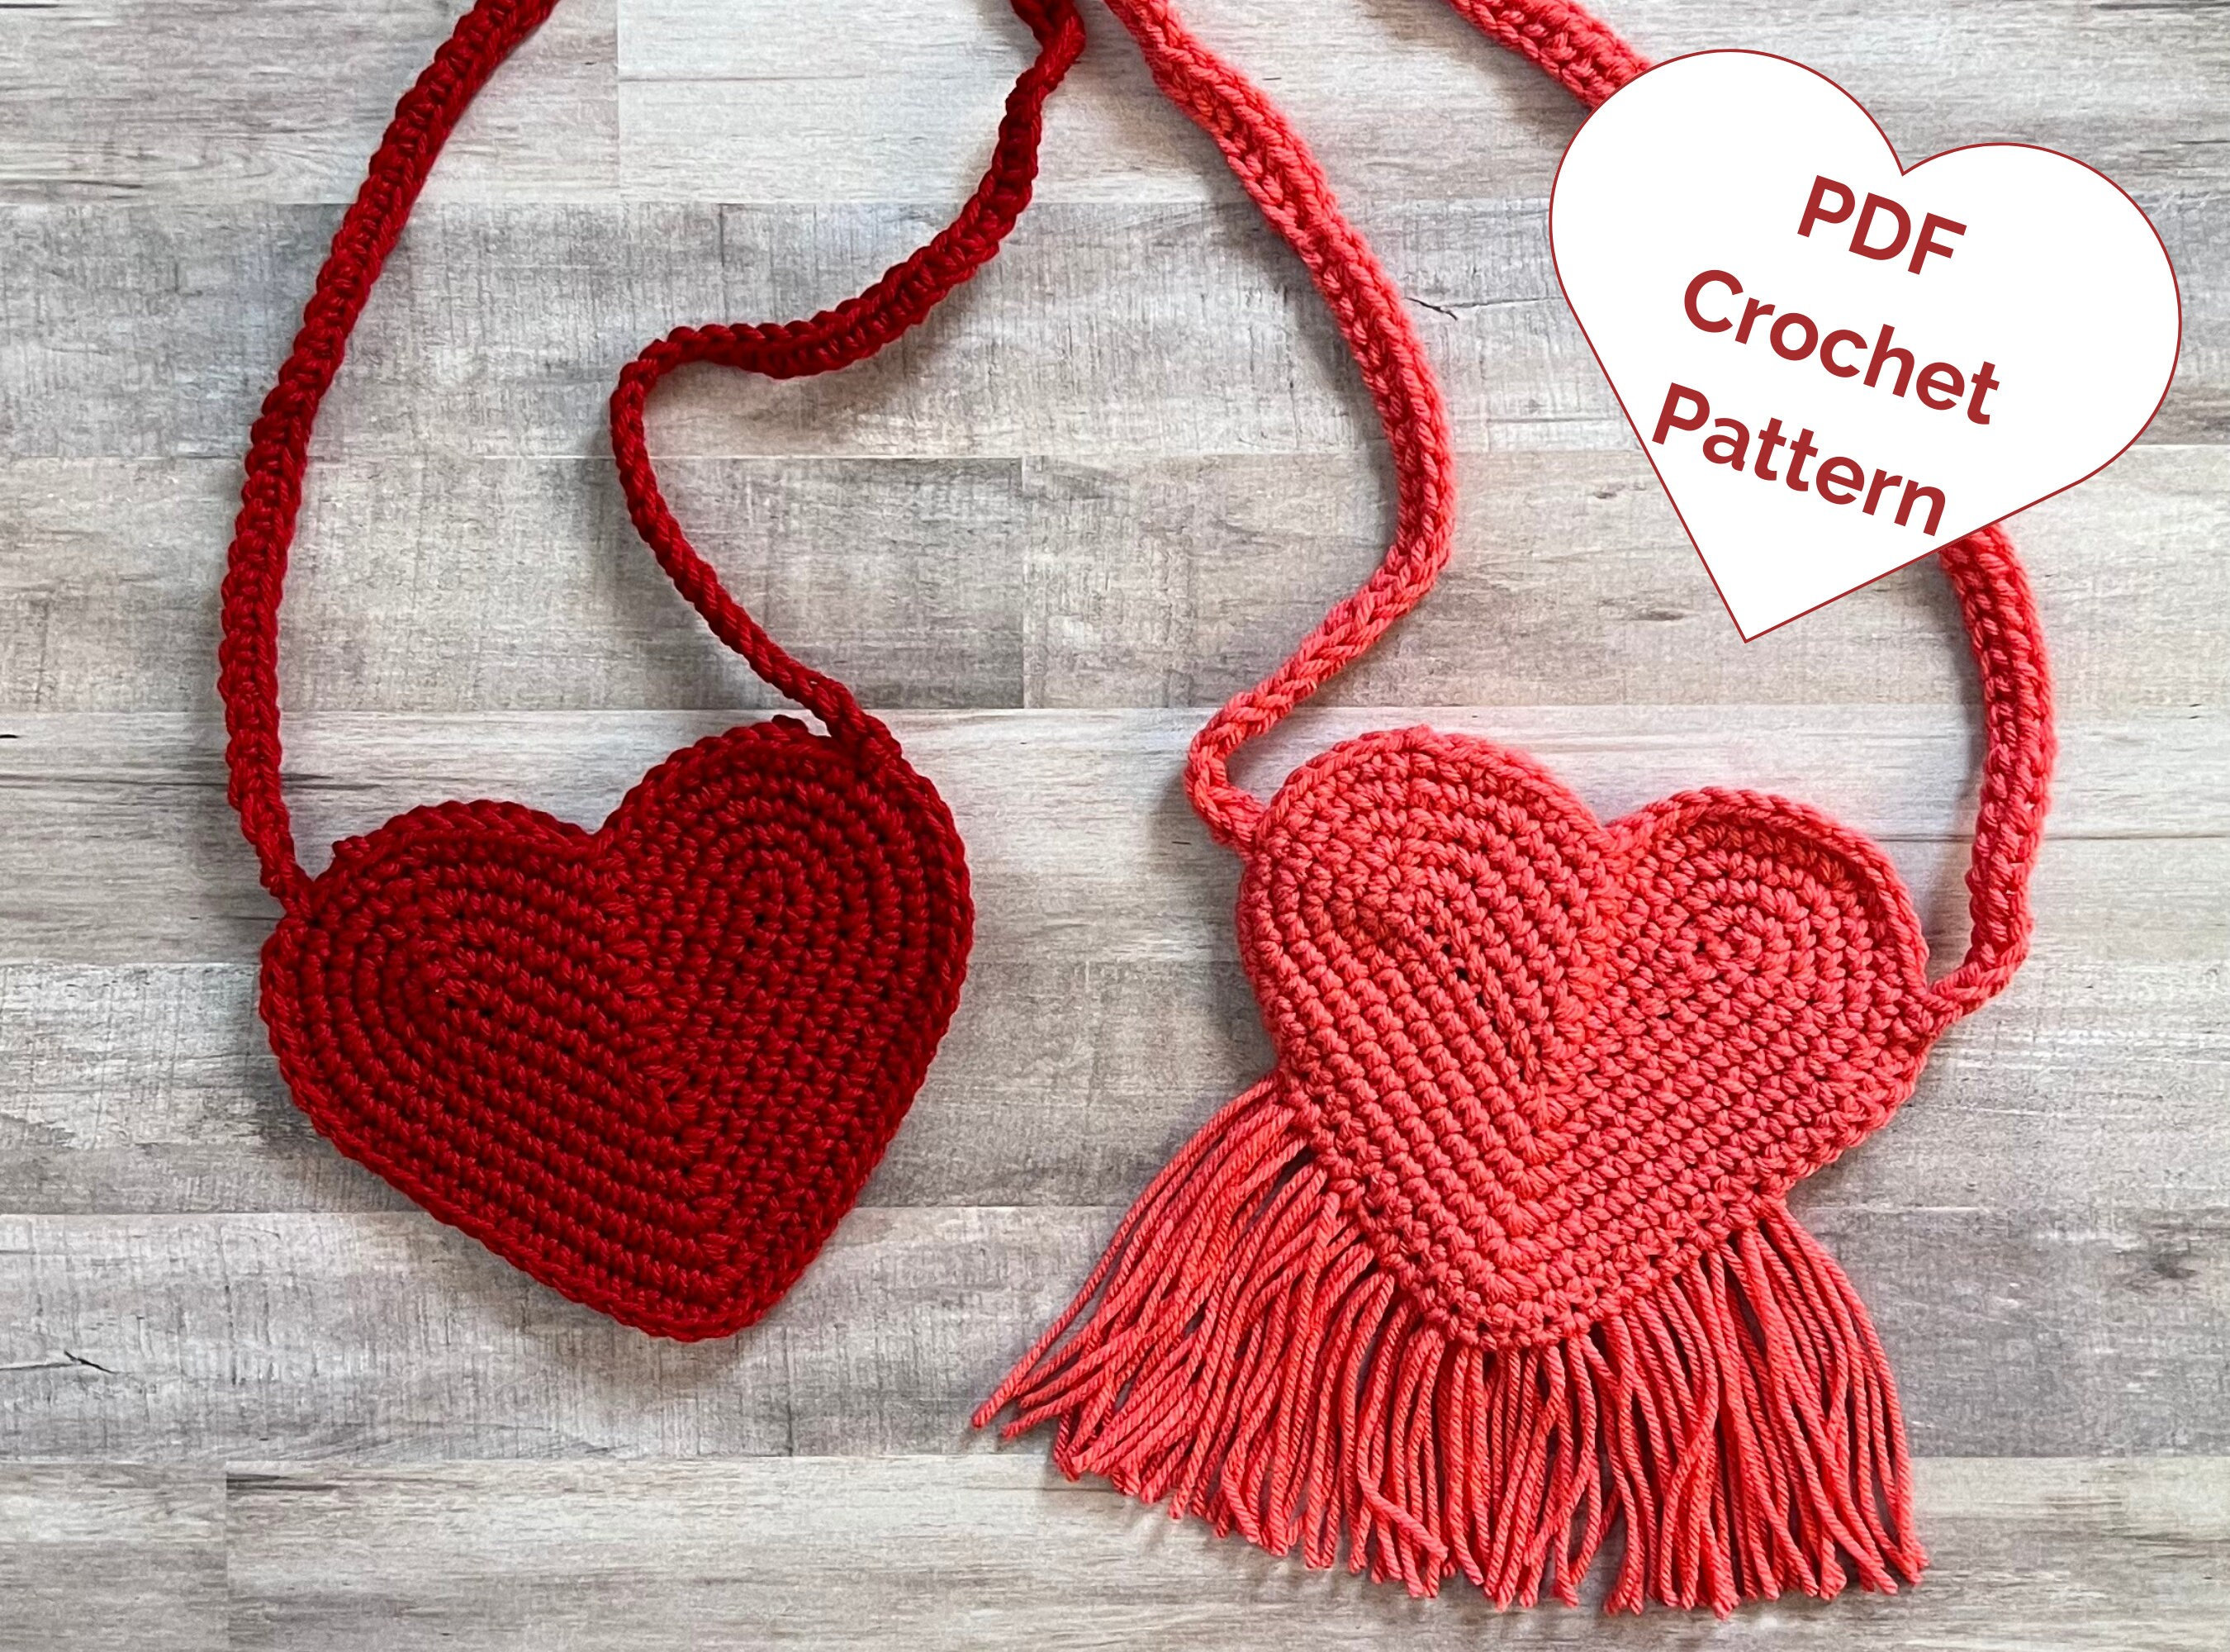 Crochet heart purse pattern